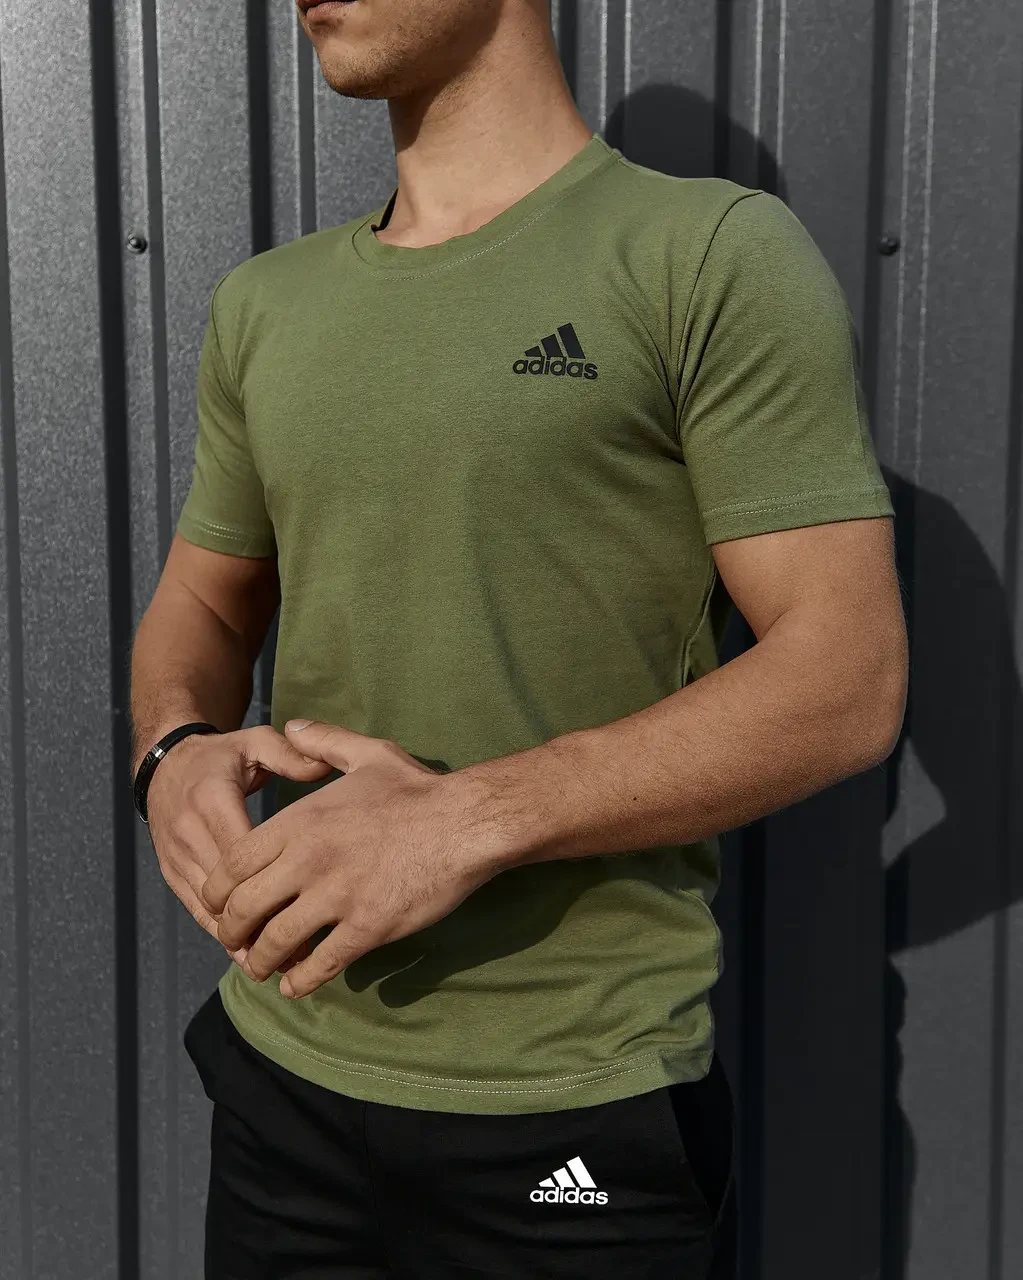 Чоловічі футболки та майки Adidas хакі, Турецькі чоловічі футболки друк, Модна футболка Адідас